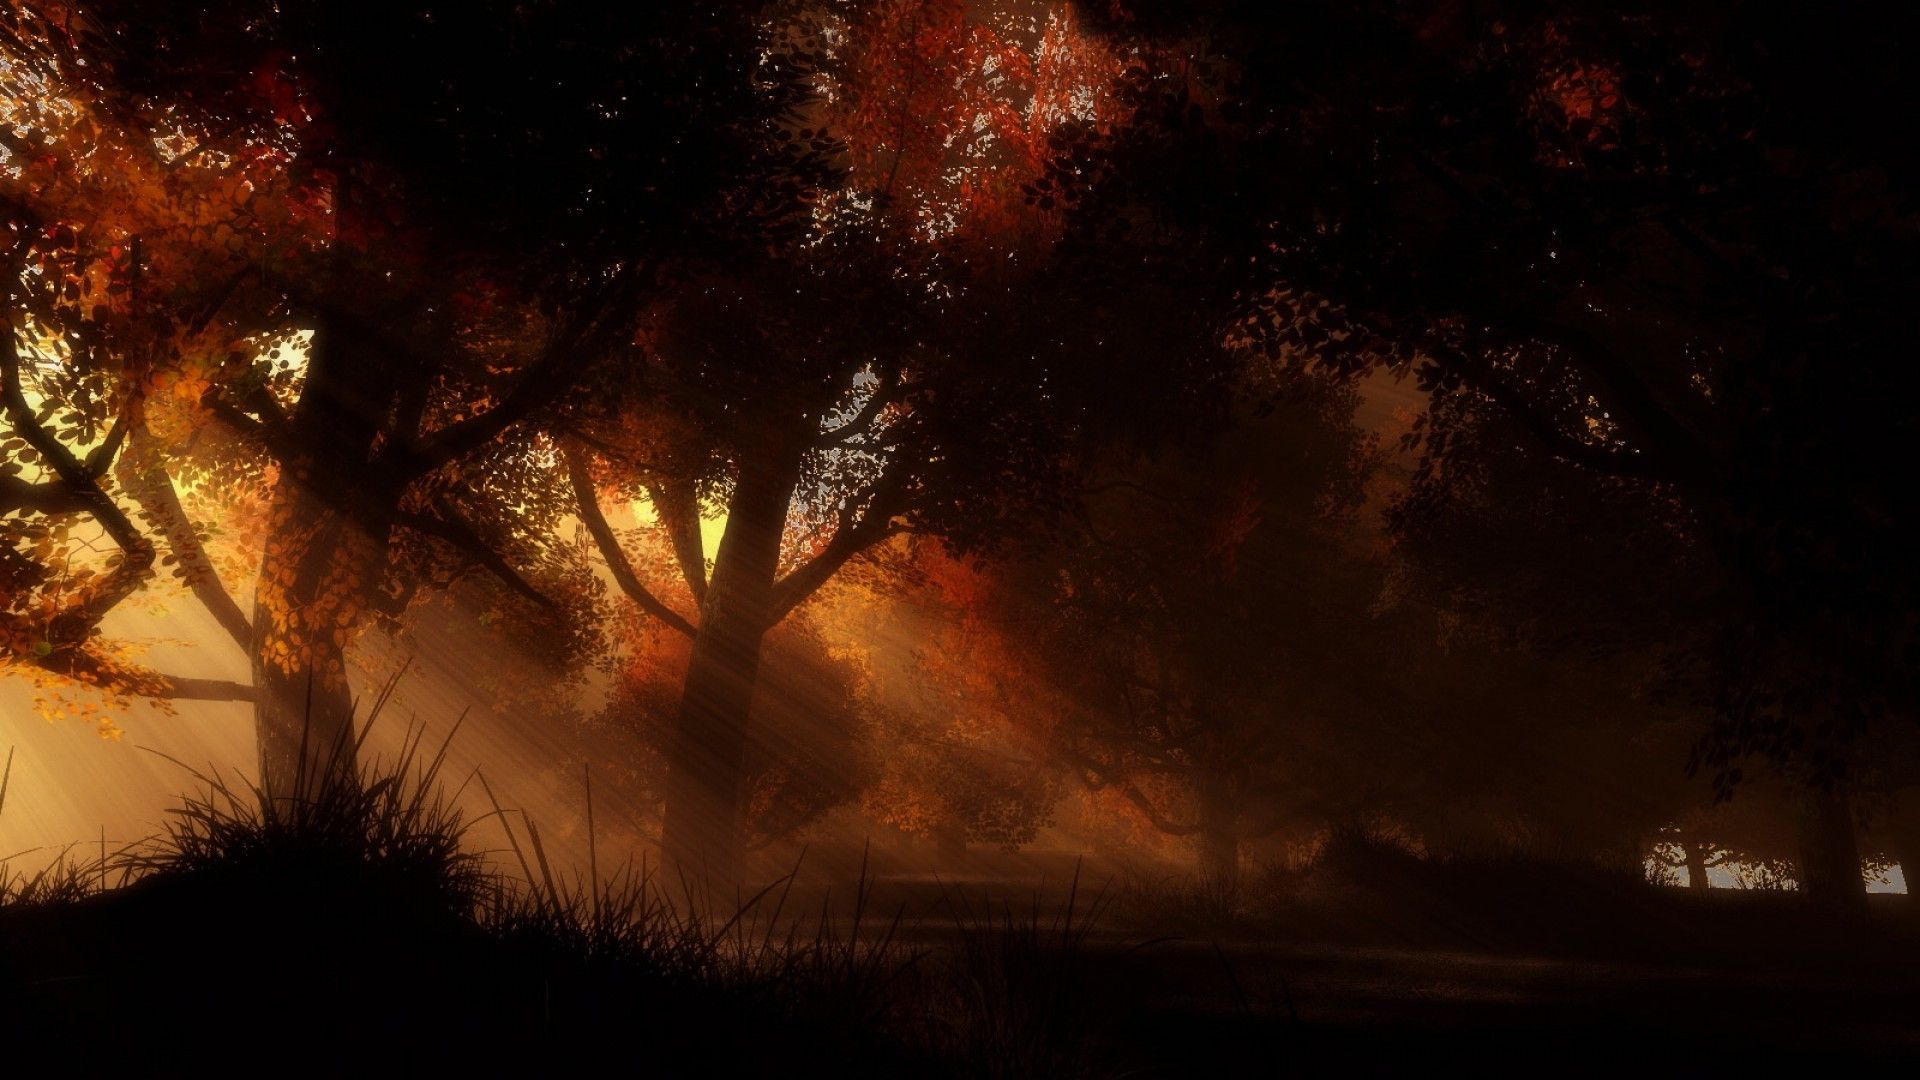 Download desktop wallpaper Autumn dark forest, photo dense forest